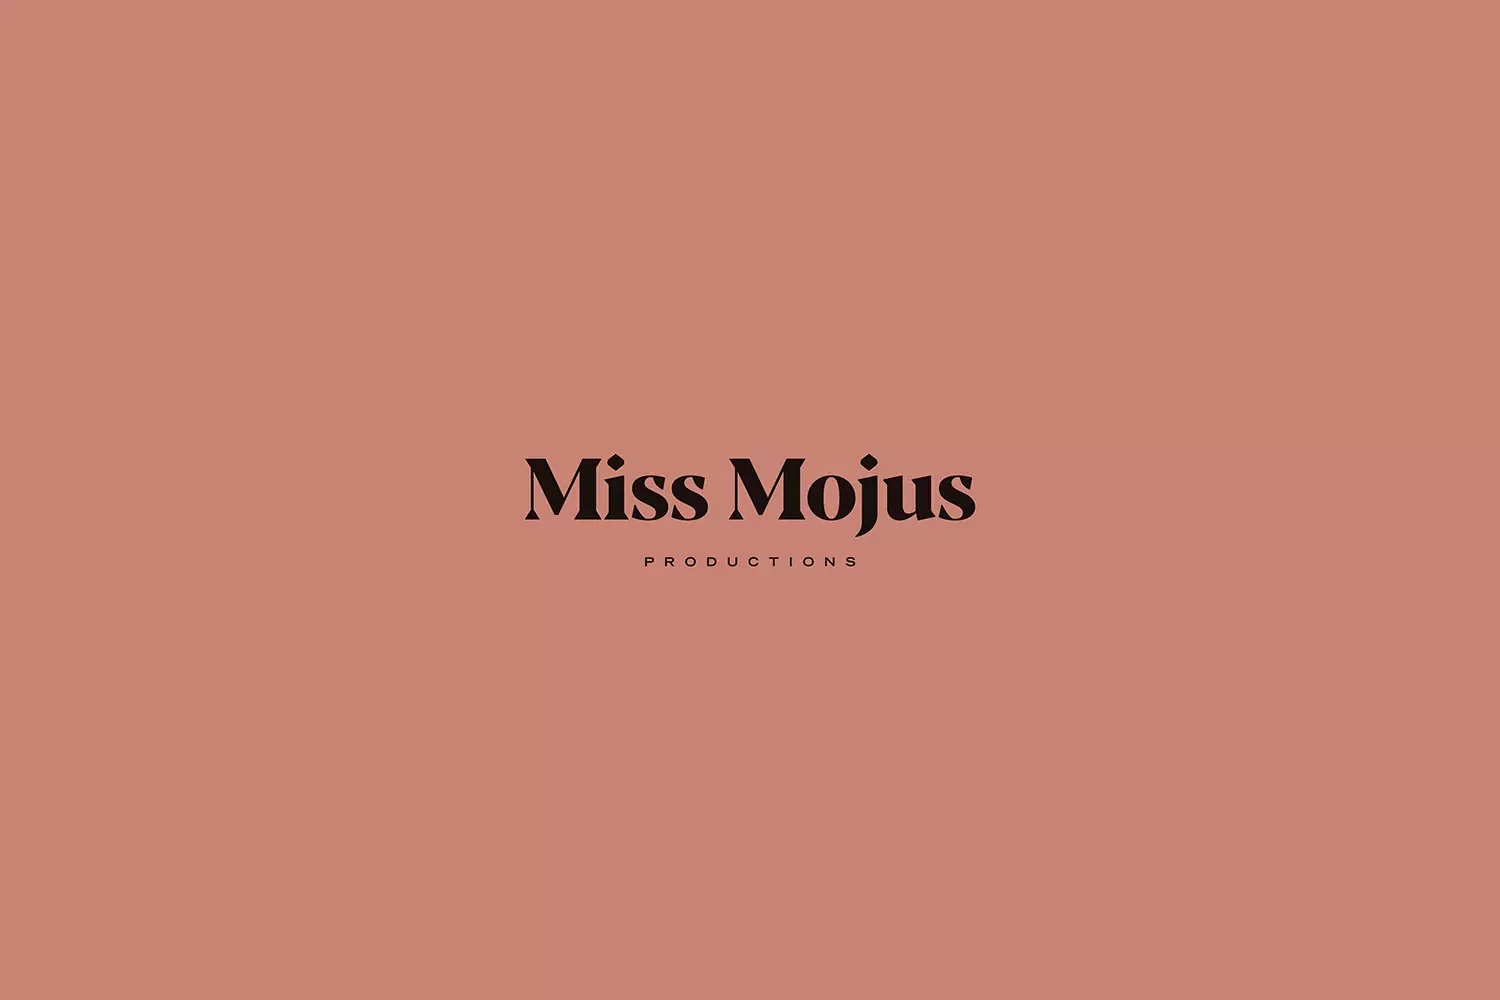 Miss Mojus选美制片机构品牌视觉设计